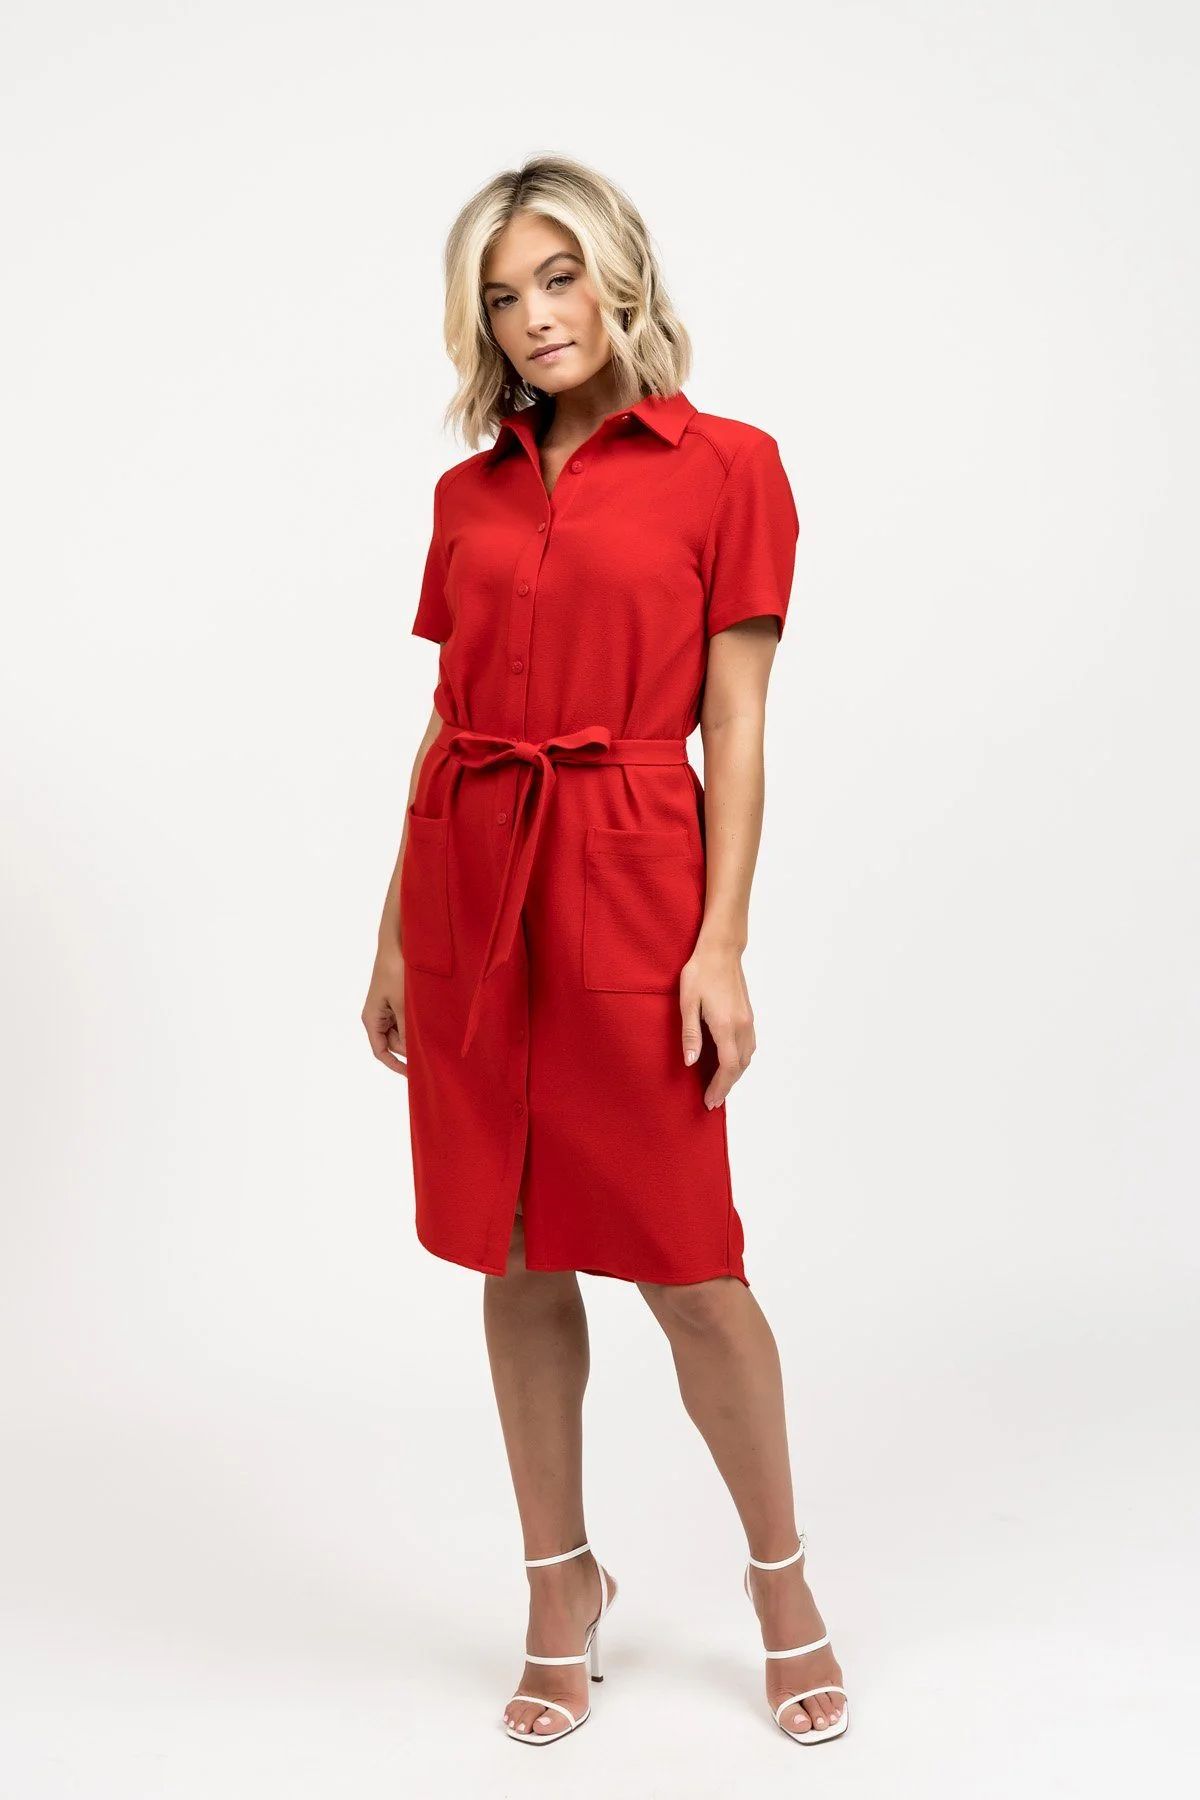 The Shirt Dress - Red | Rachel Parcell